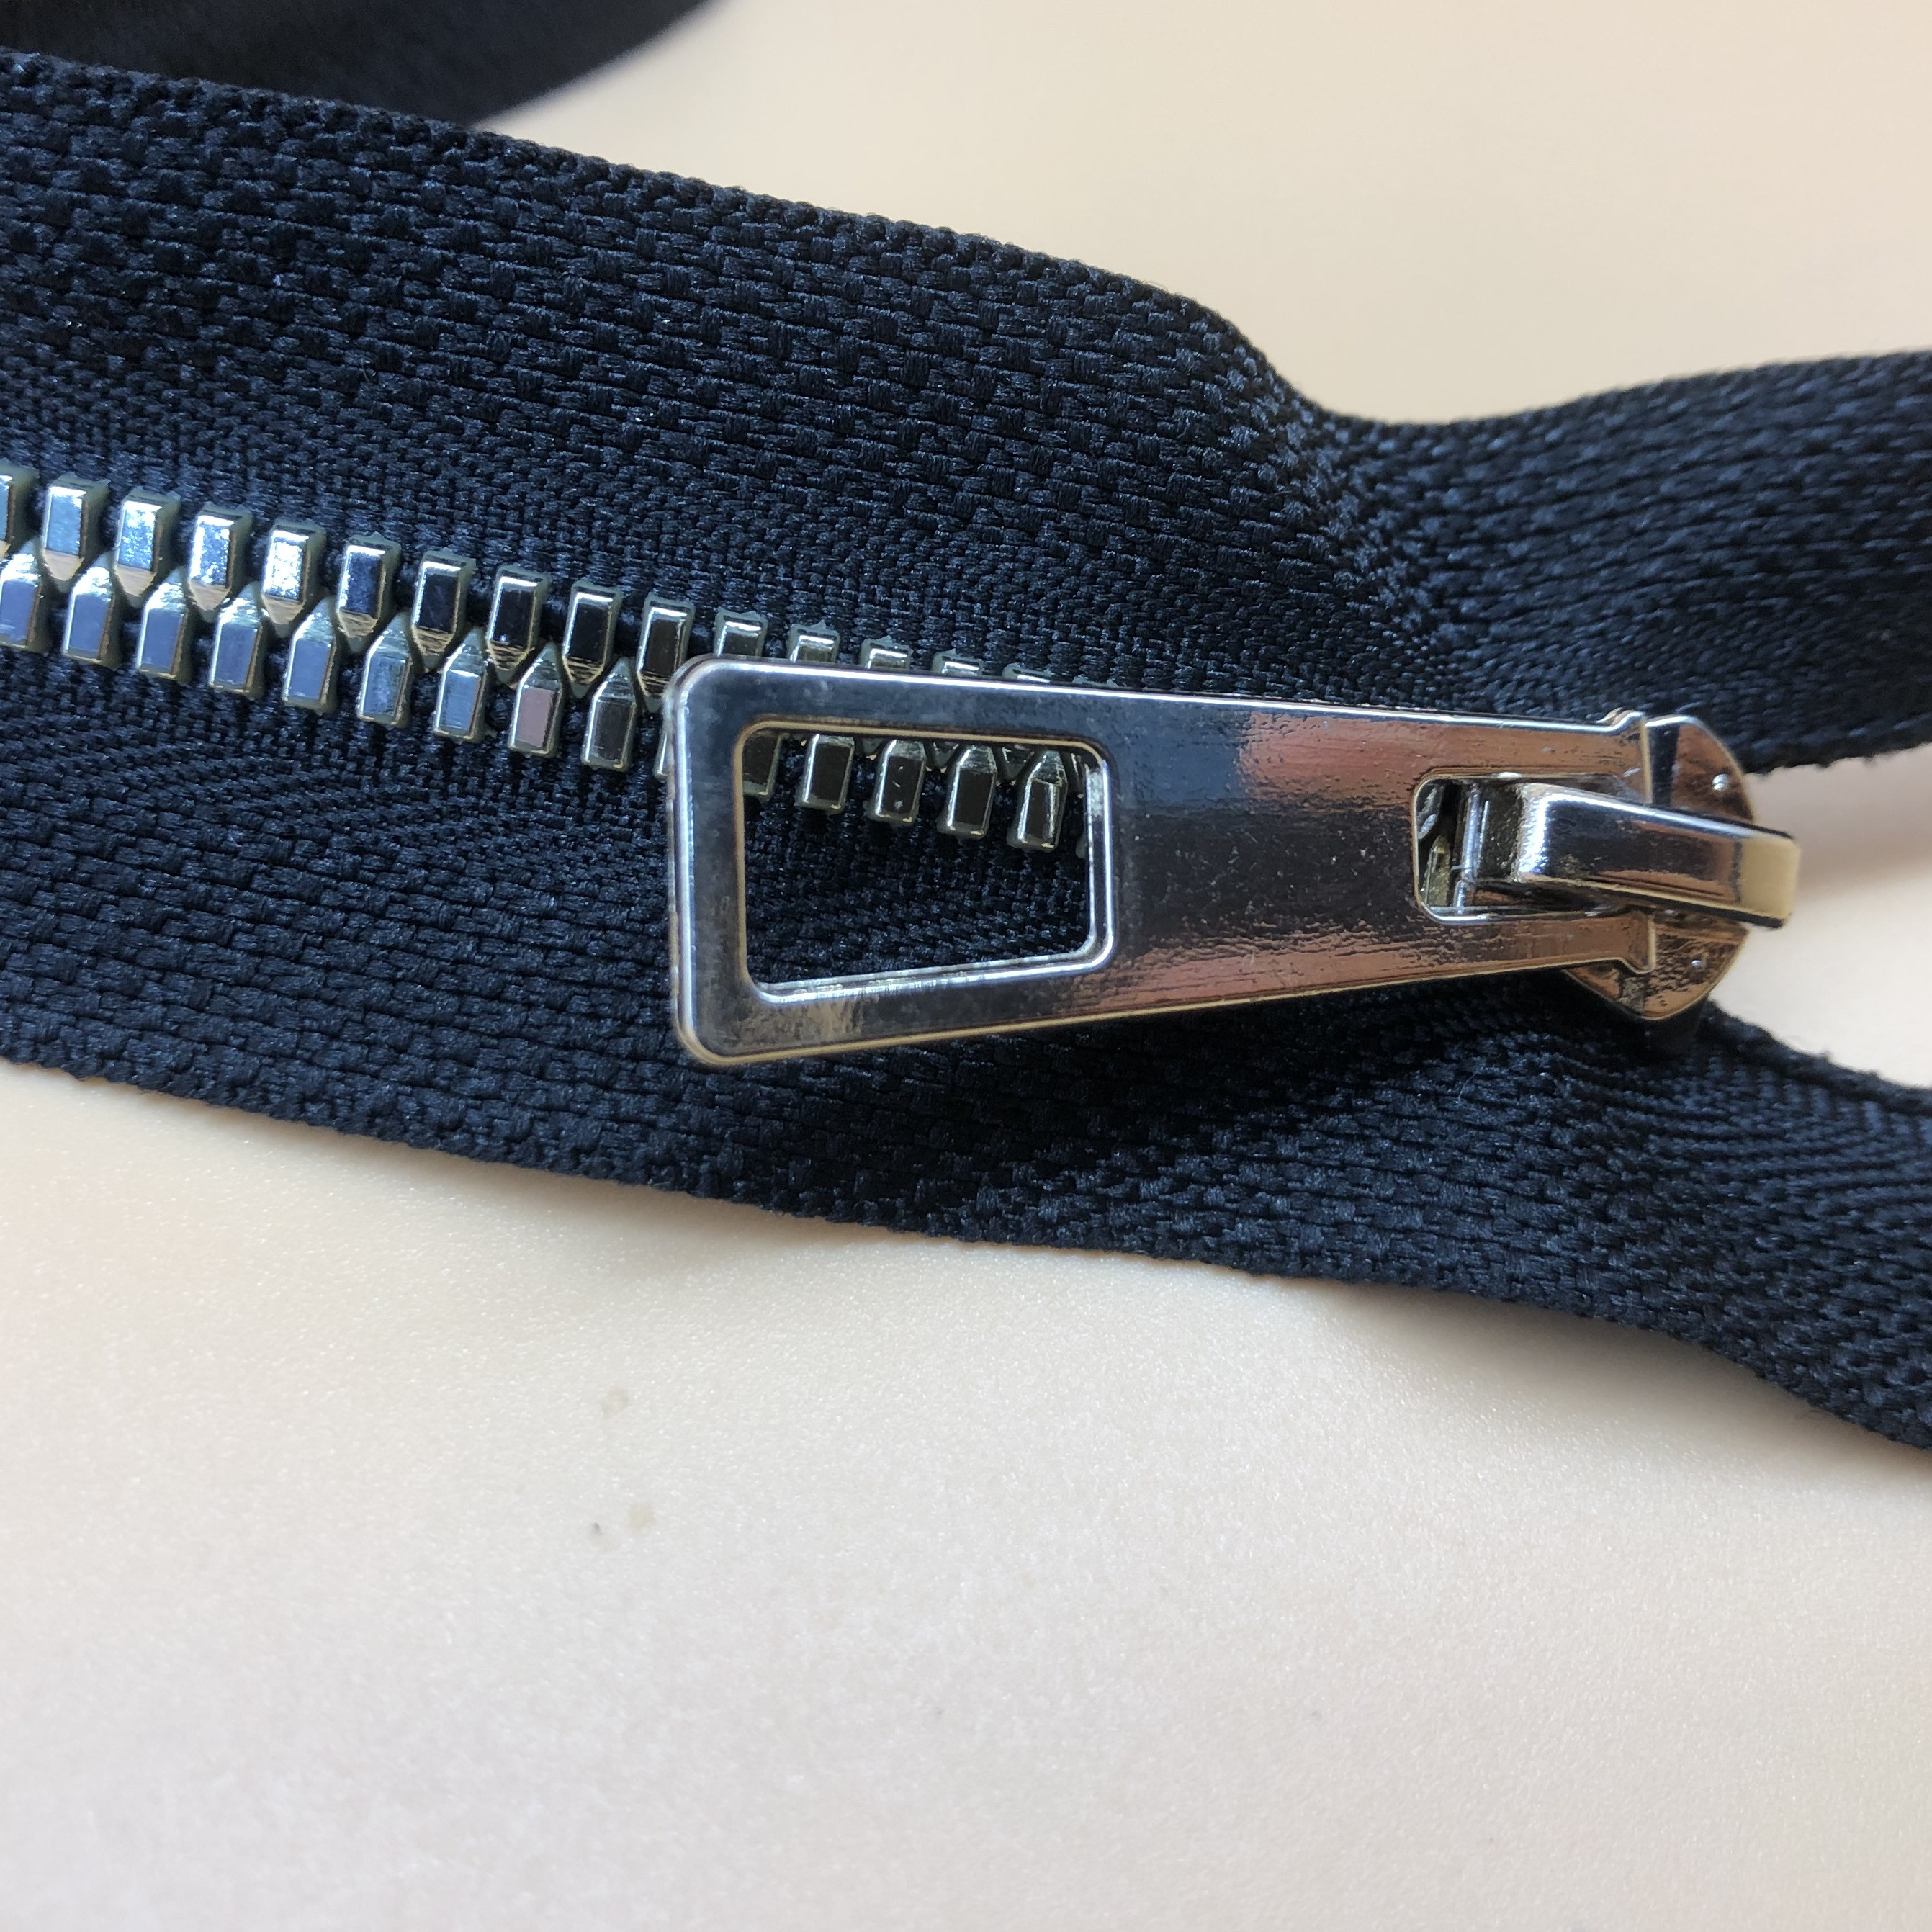 Zipper Pull Replacements Repair Kit